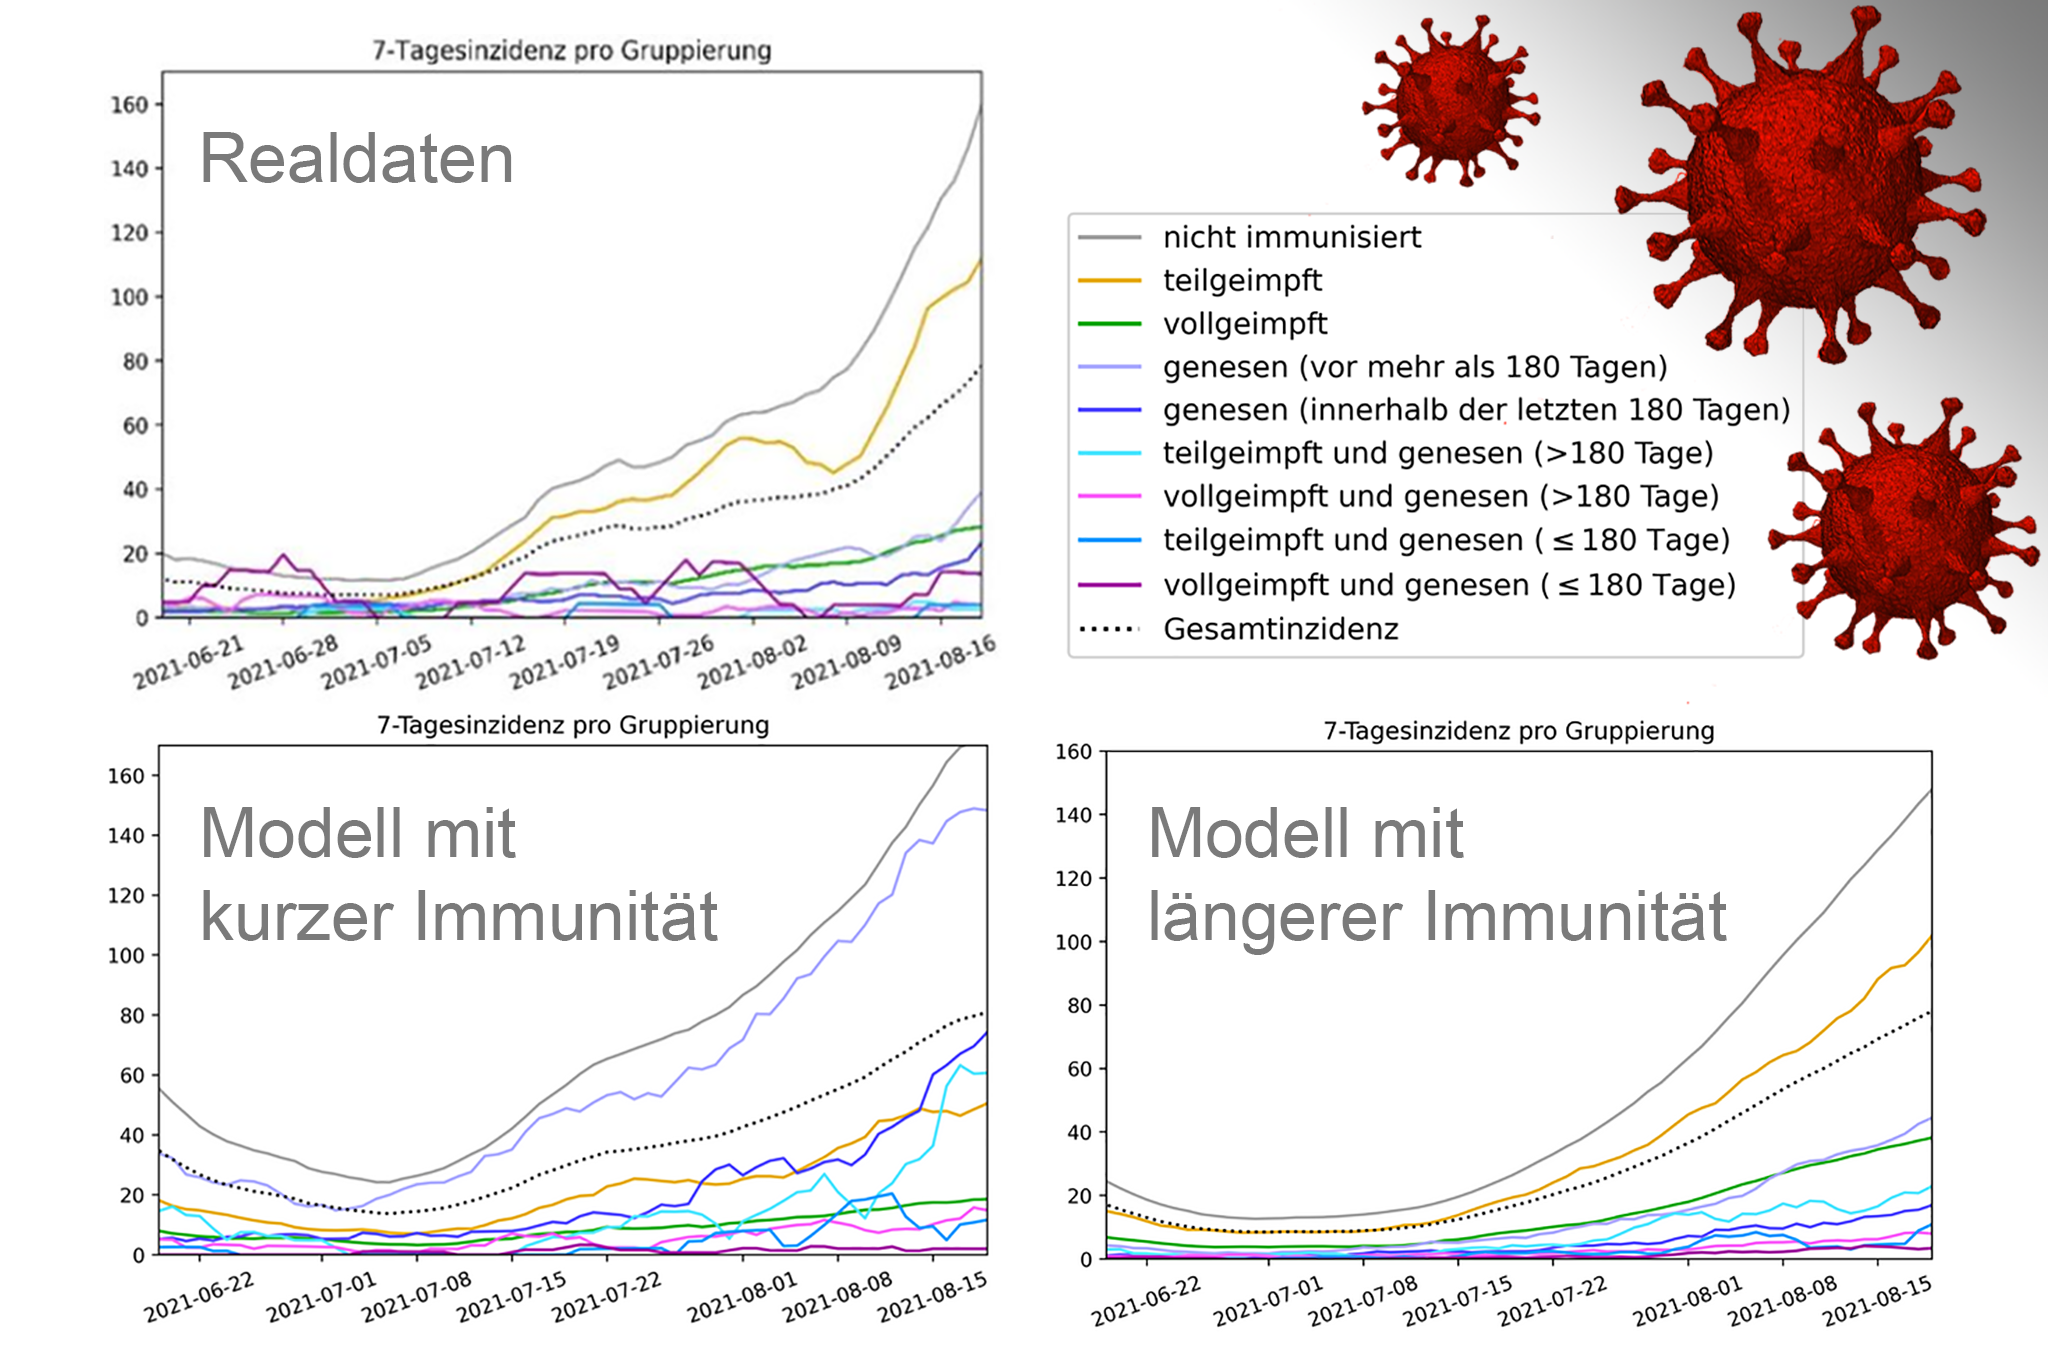 Modellrechnungen im Vergleich zu den Realdaten. Rechts oben 3 stilisierte Corona-Viren.